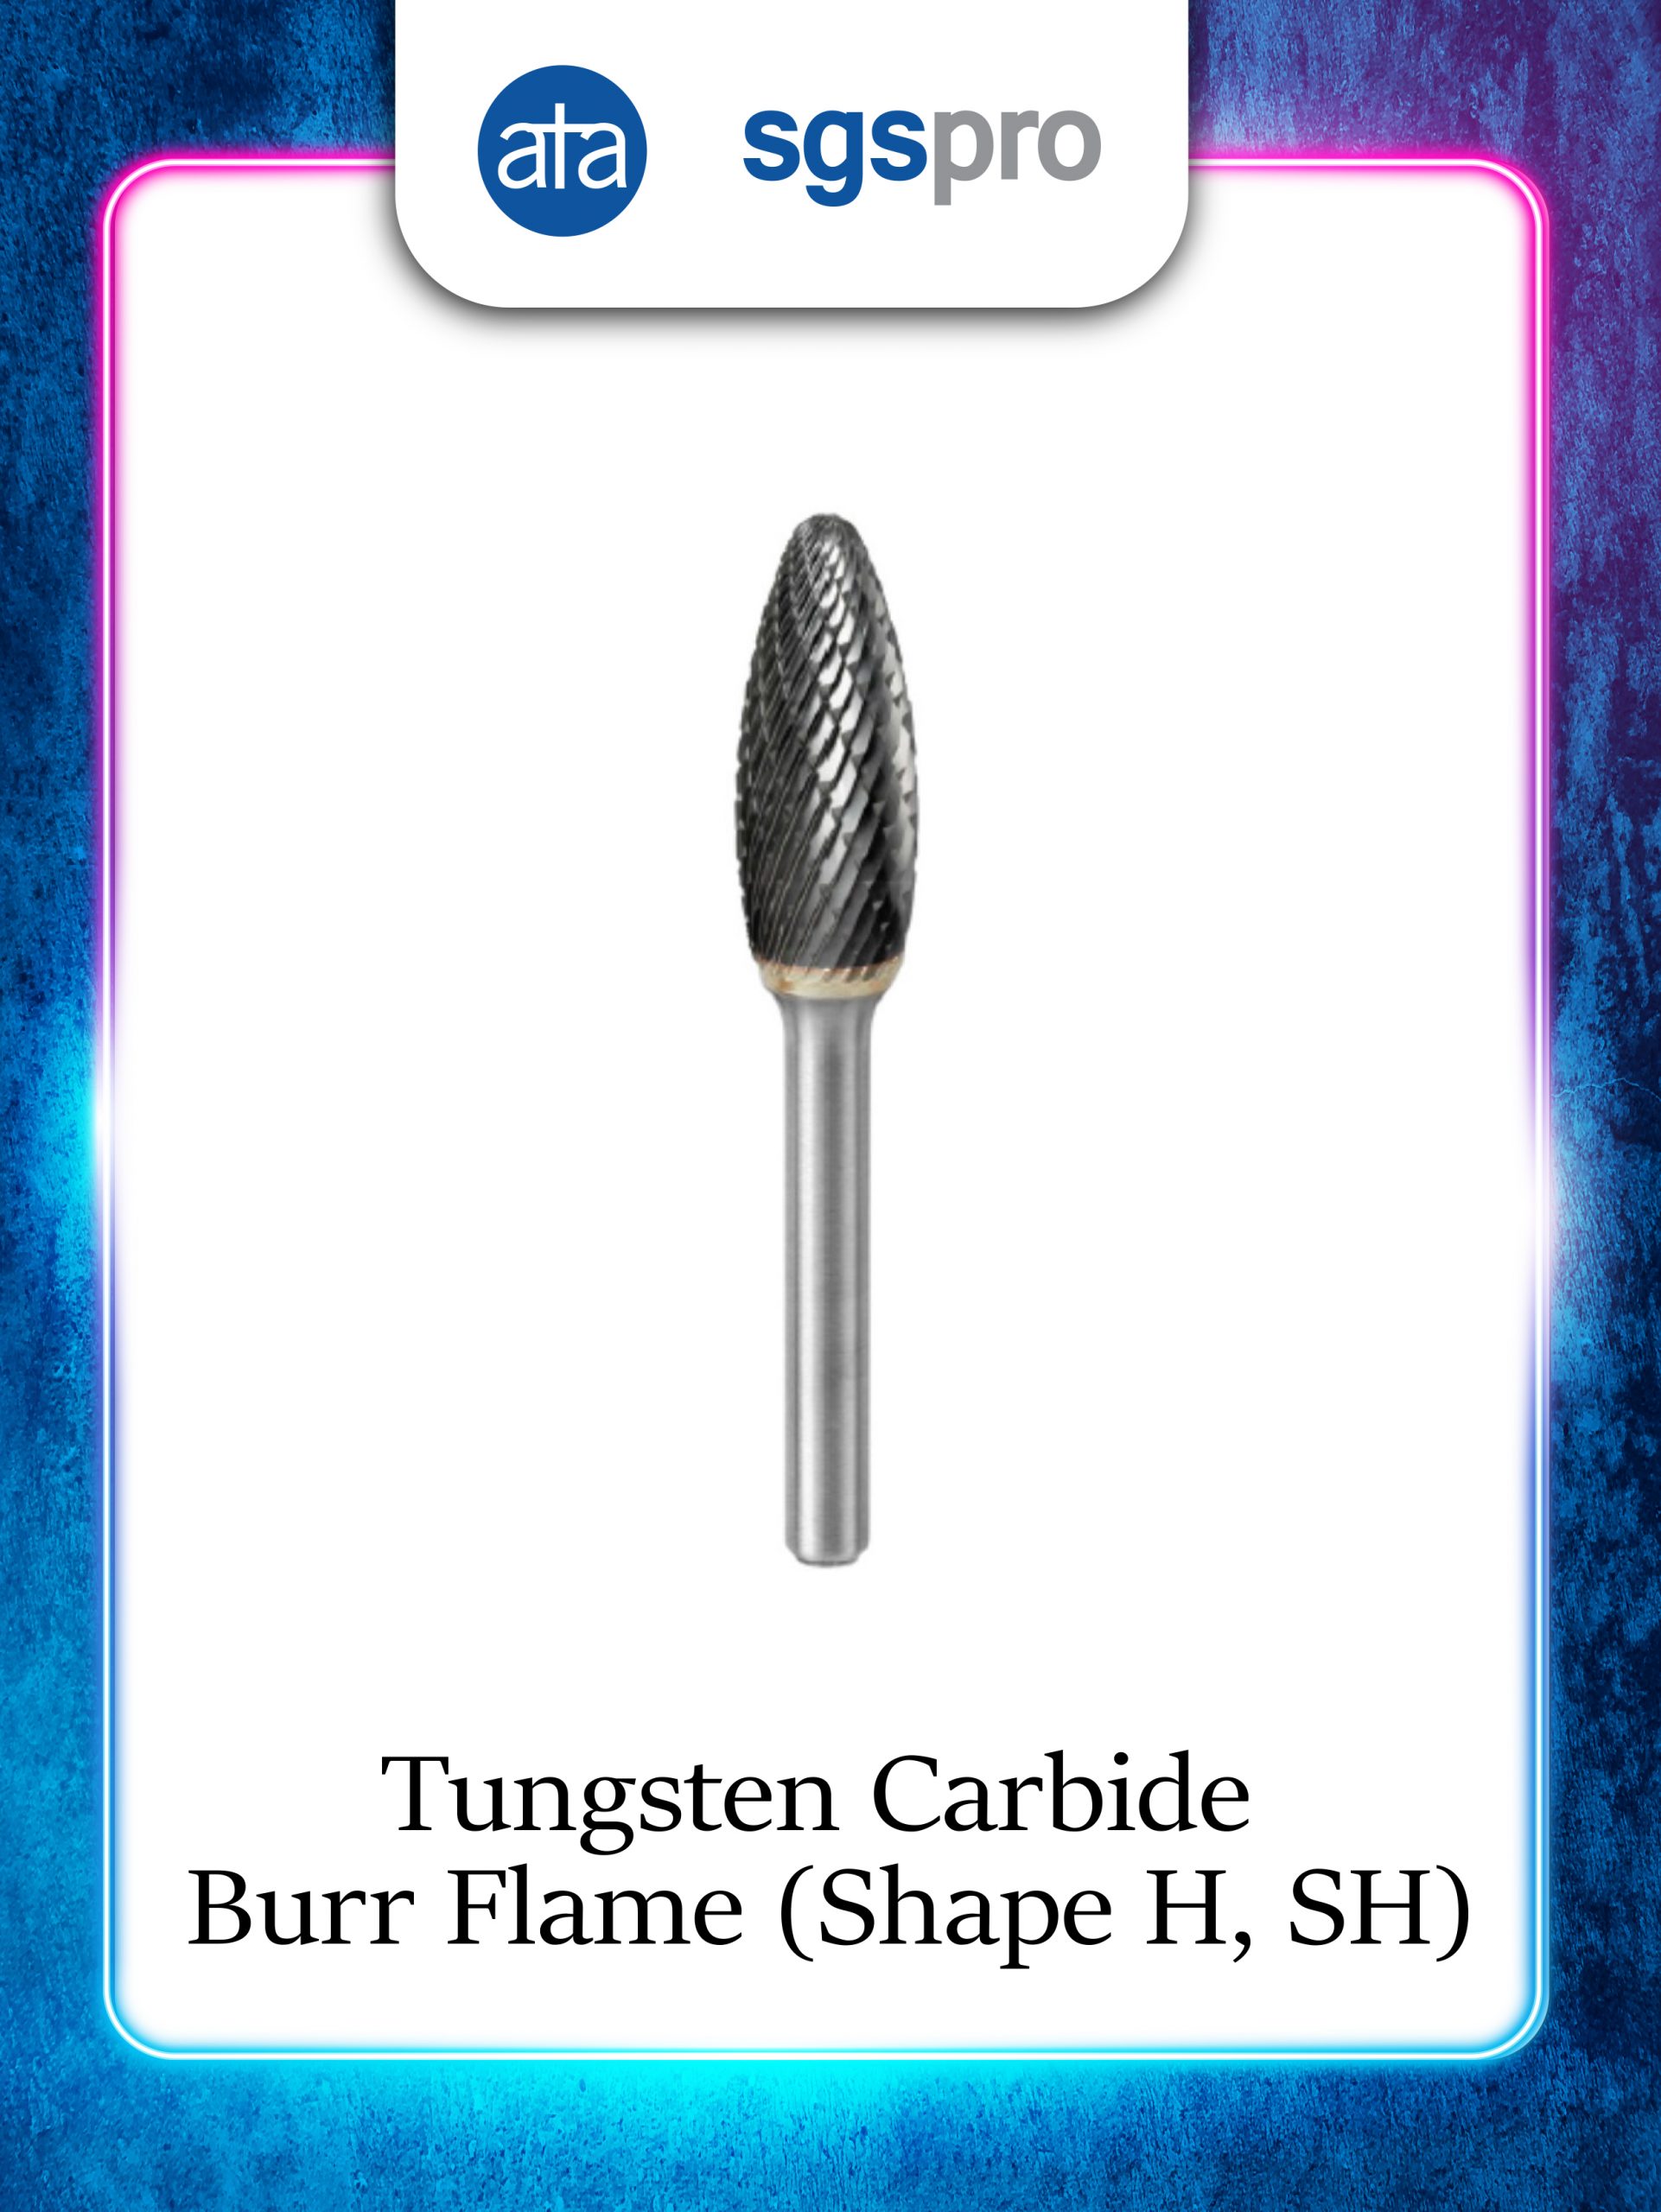 SGSPRO | Tungsten Carbide Burs